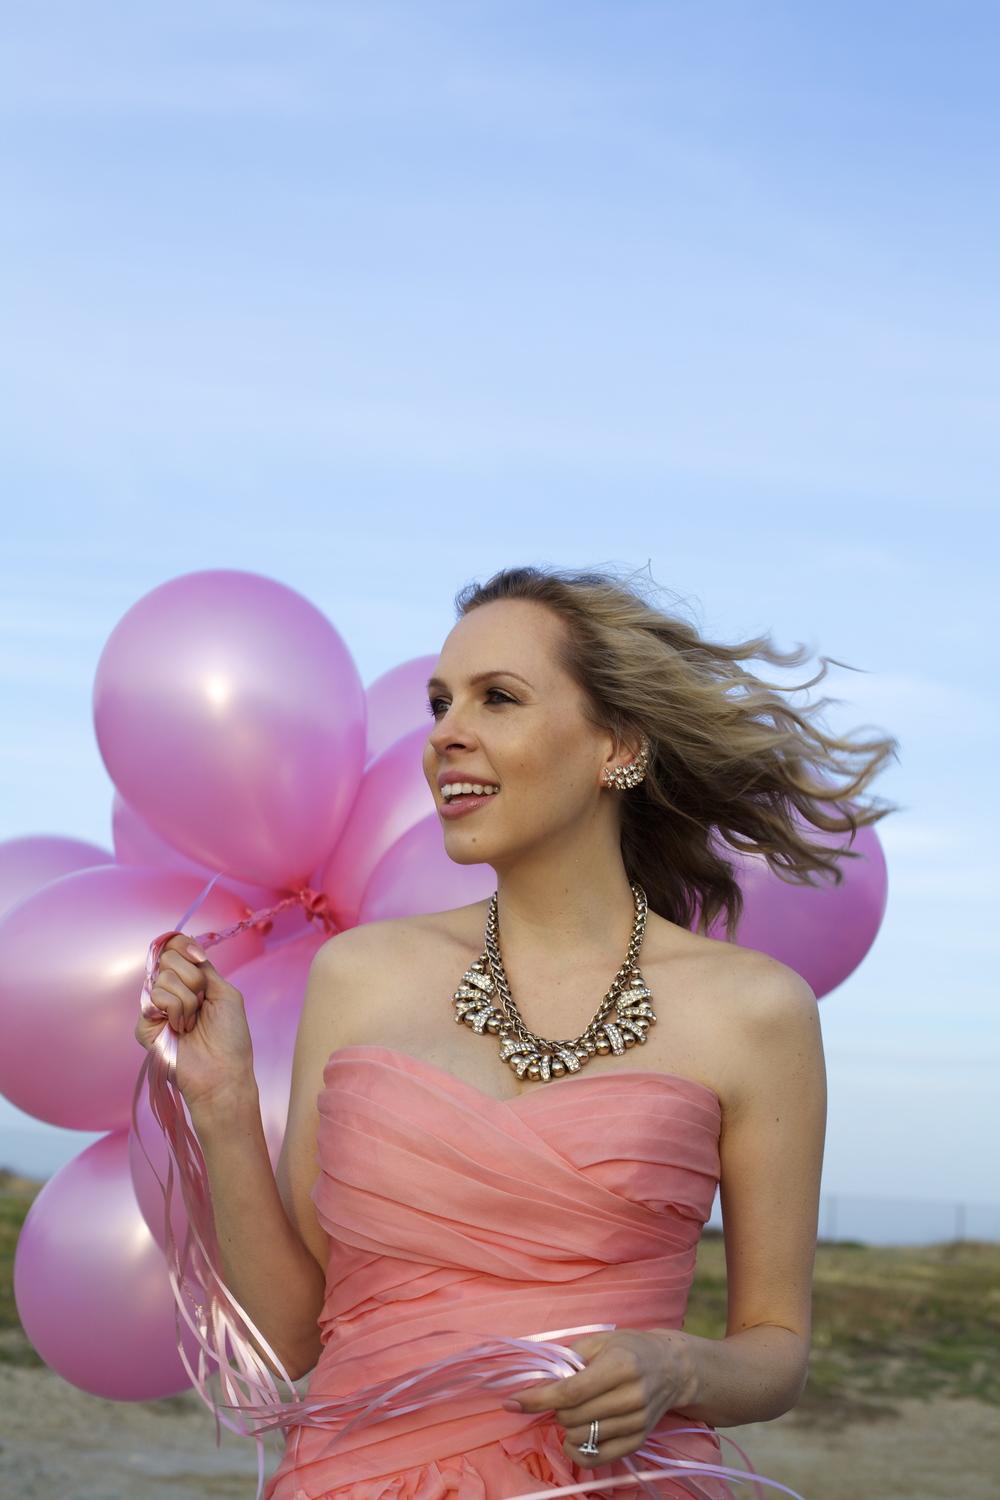 monique+Lhuillier+dress%2C+pink+balloons.jpg